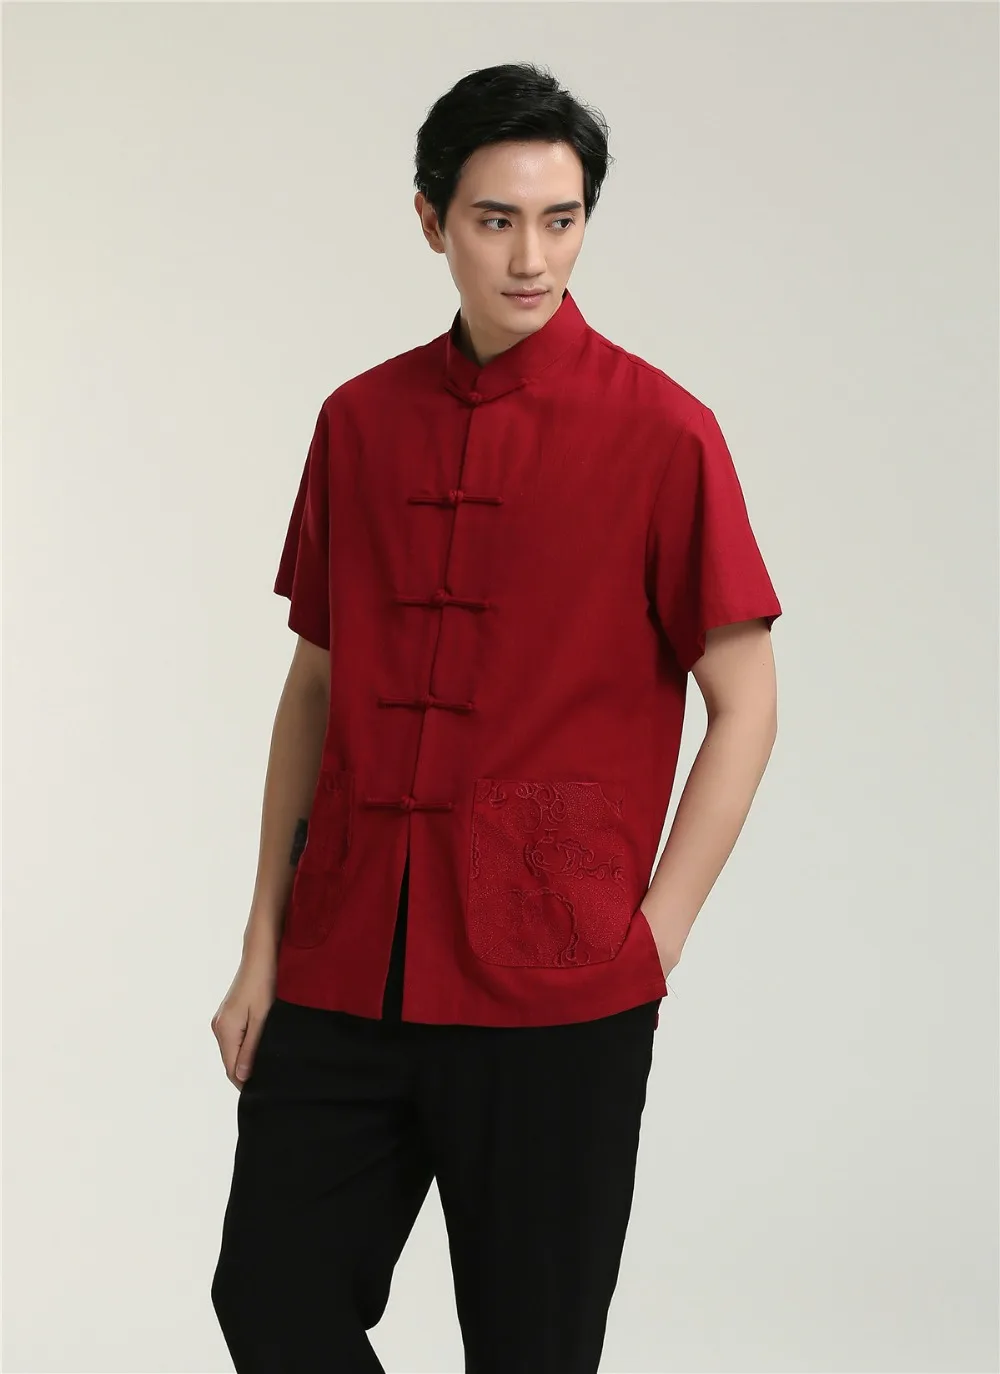 Шанхай история Льняная мужская рубашка Китайская традиционная мужская одежда костюм Тан Китайская одежда для мужчин Топ кунг-фу